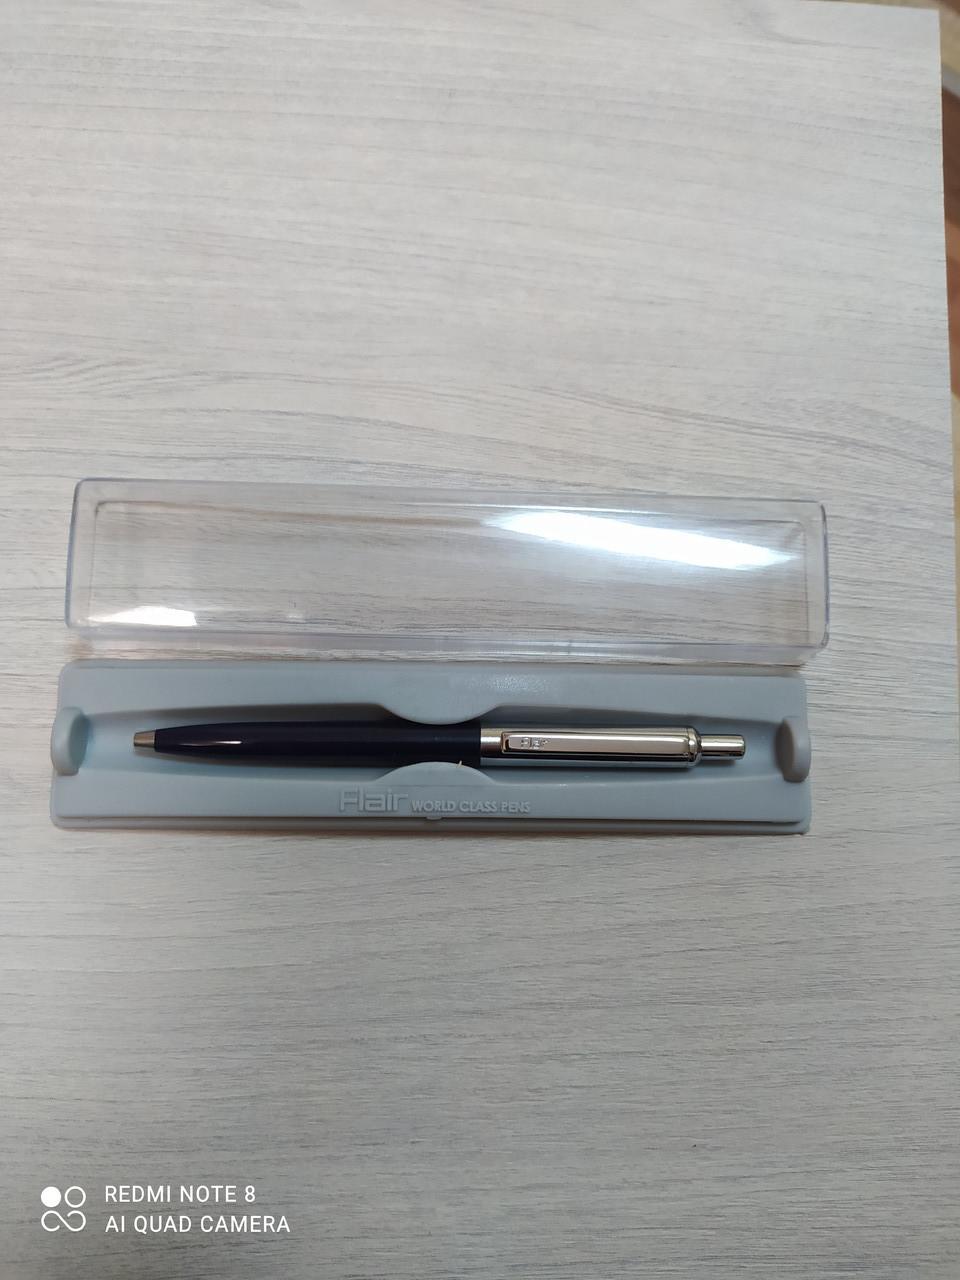 Ручка шариковая автоматическая FLAIR HALF METAL в футляре (цена с НДС)